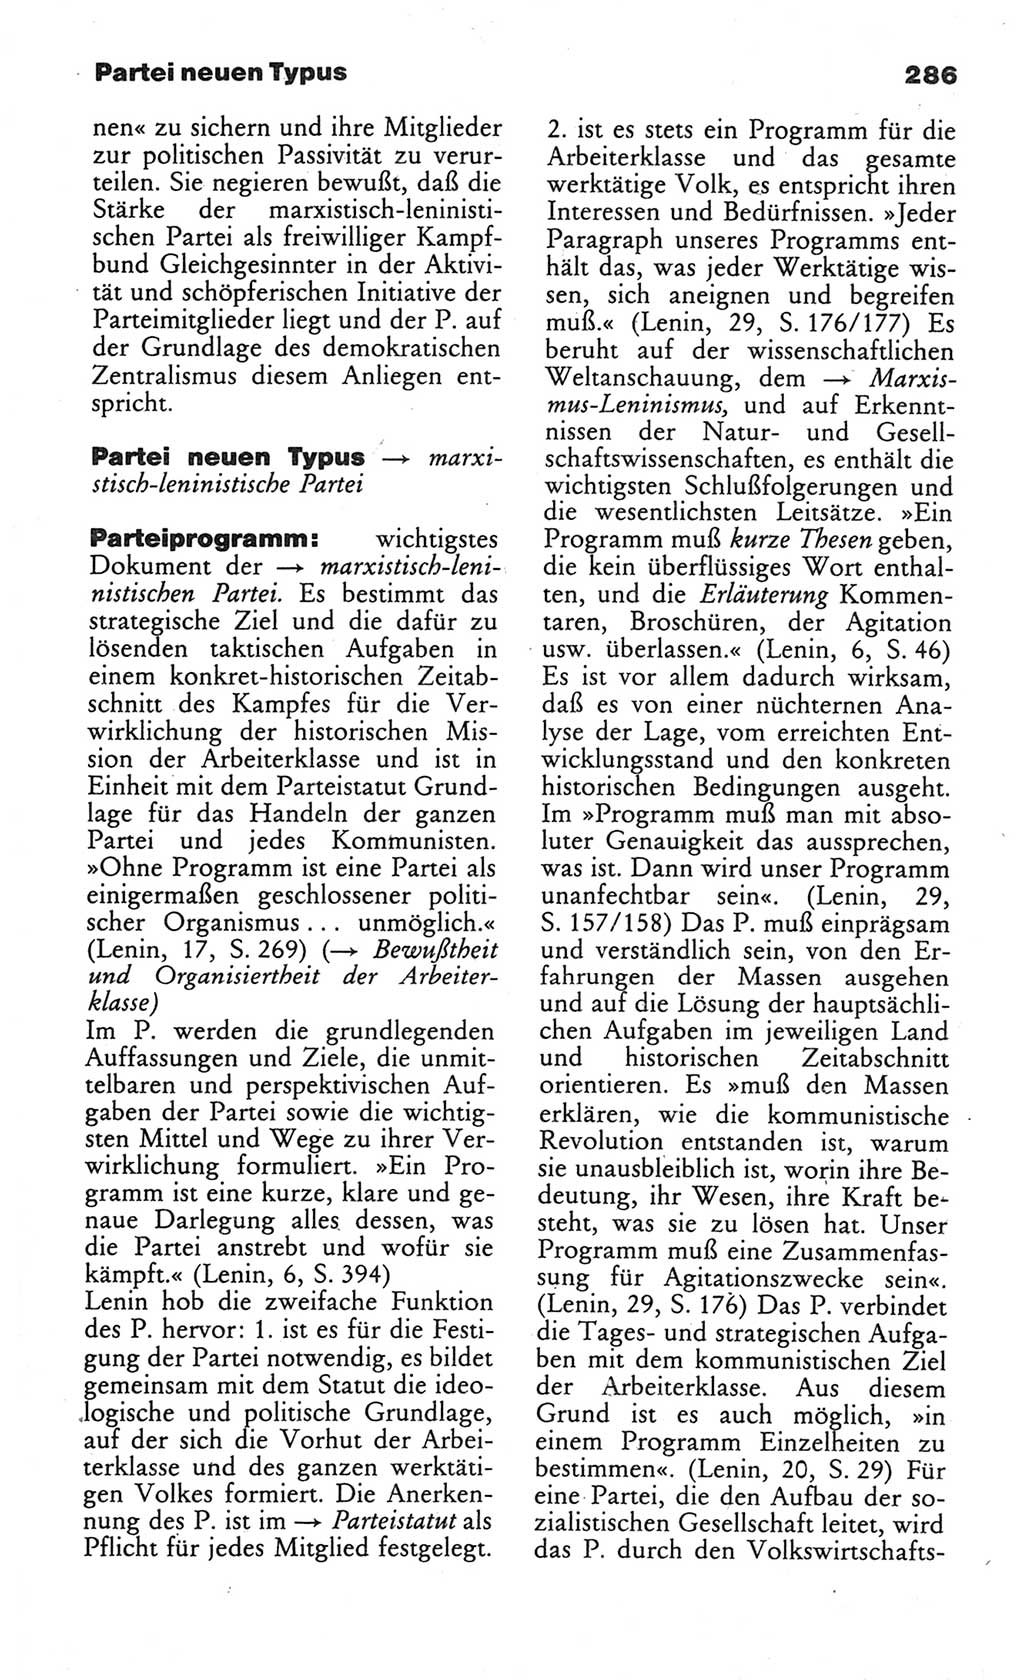 Wörterbuch des wissenschaftlichen Kommunismus [Deutsche Demokratische Republik (DDR)] 1984, Seite 286 (Wb. wiss. Komm. DDR 1984, S. 286)